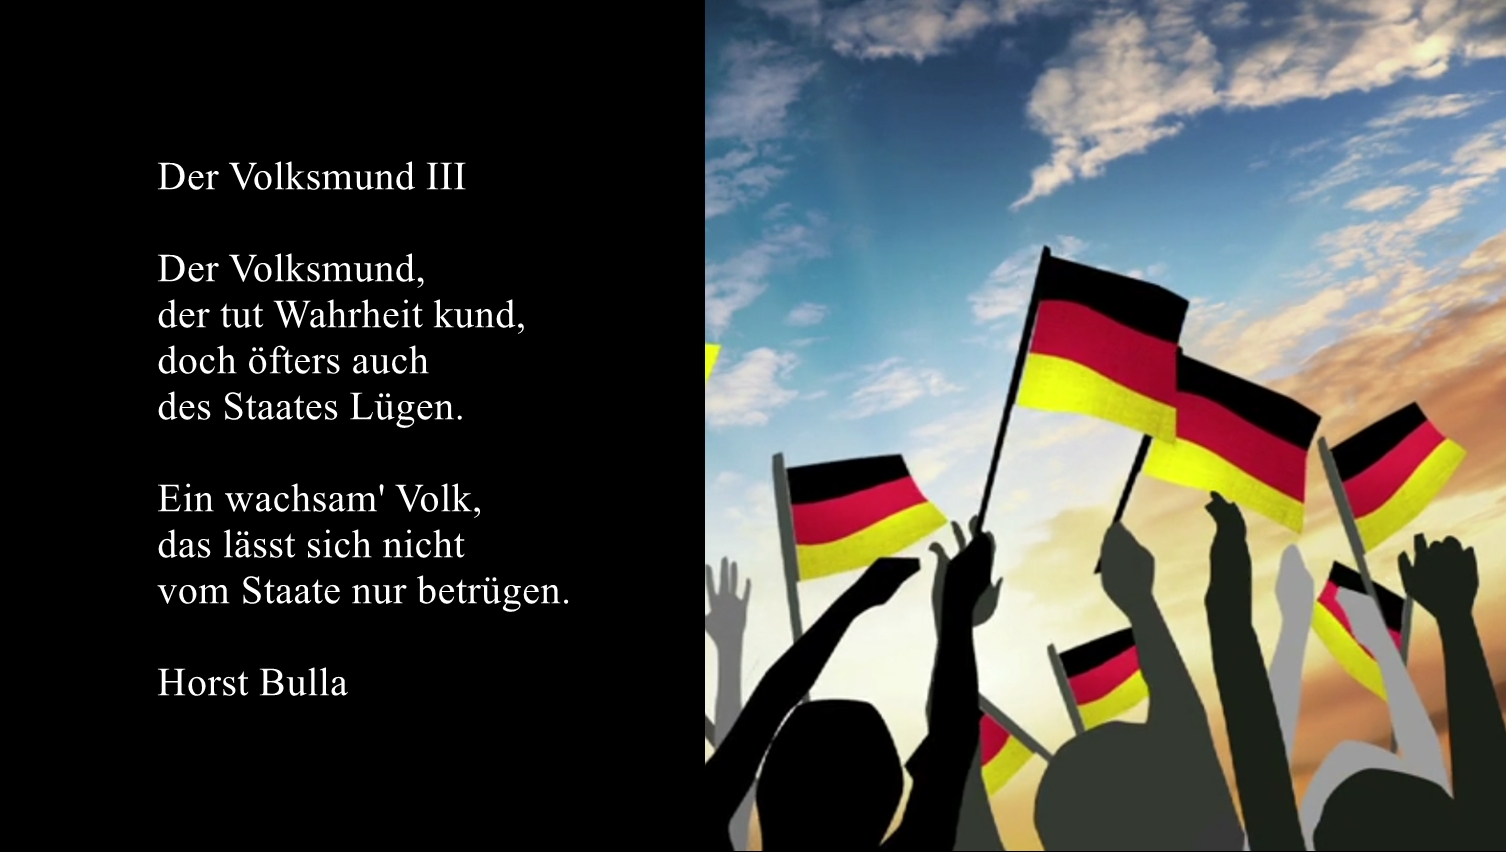 Bildgedicht: Gedicht, Der Volksmund III von Horst Bulla